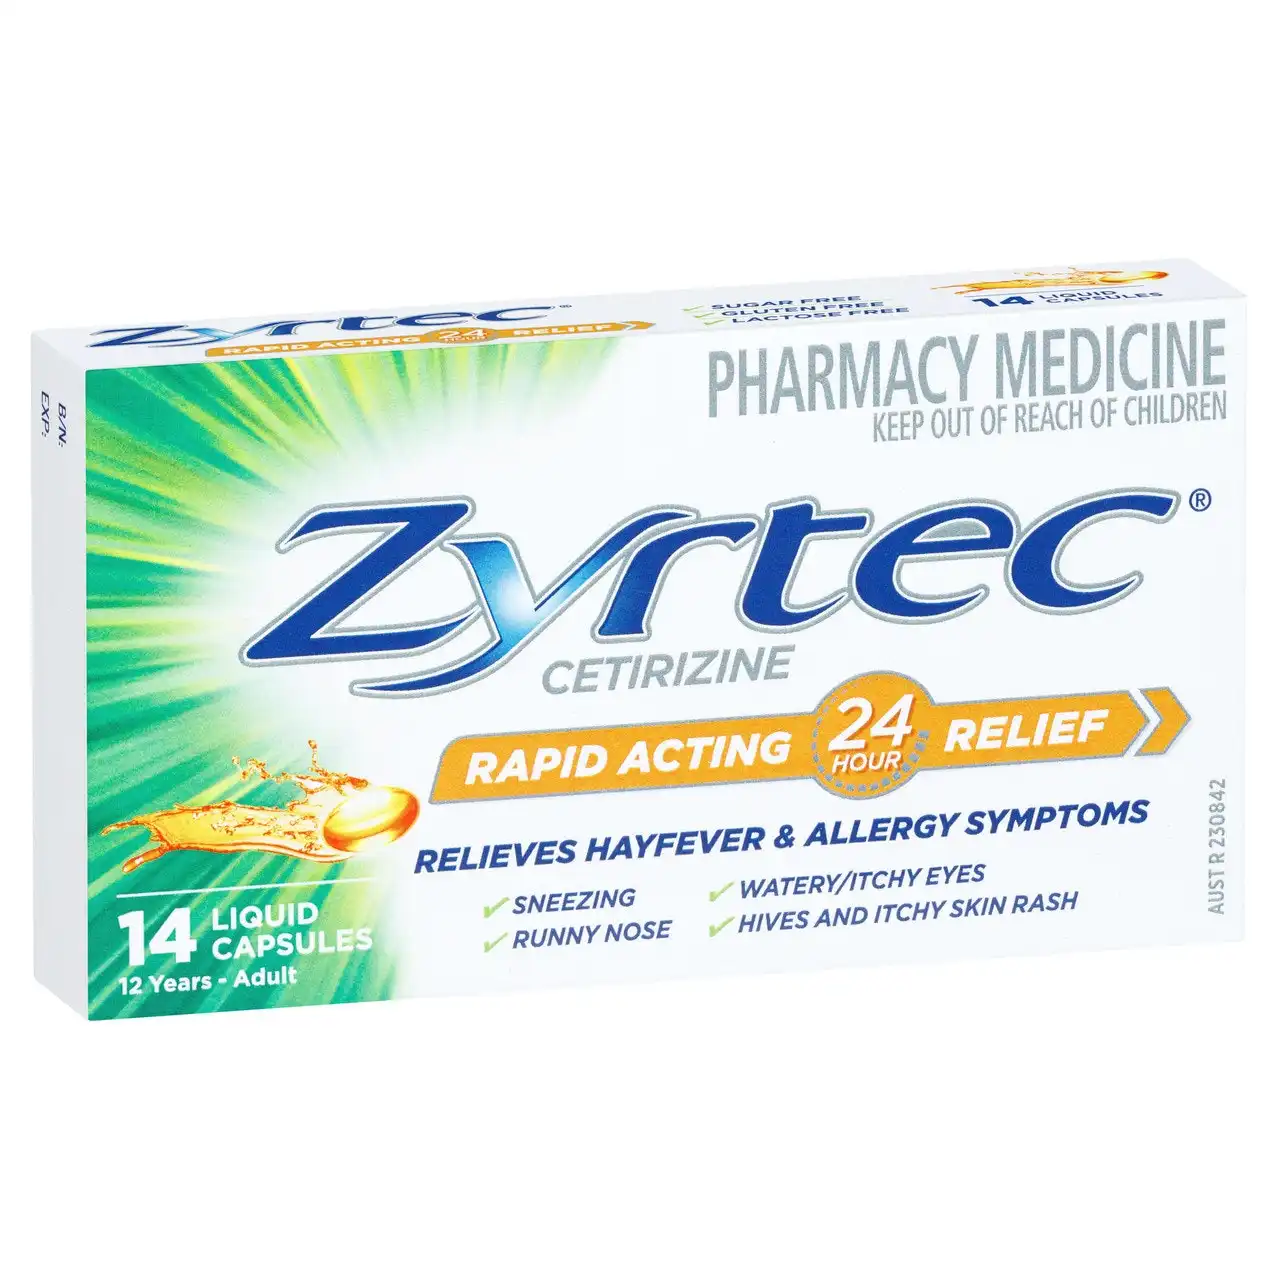 Zyrtec Rapid Acting Hayfever & Allergy Relief Antihistamine Liquid Capsules 14 Pack